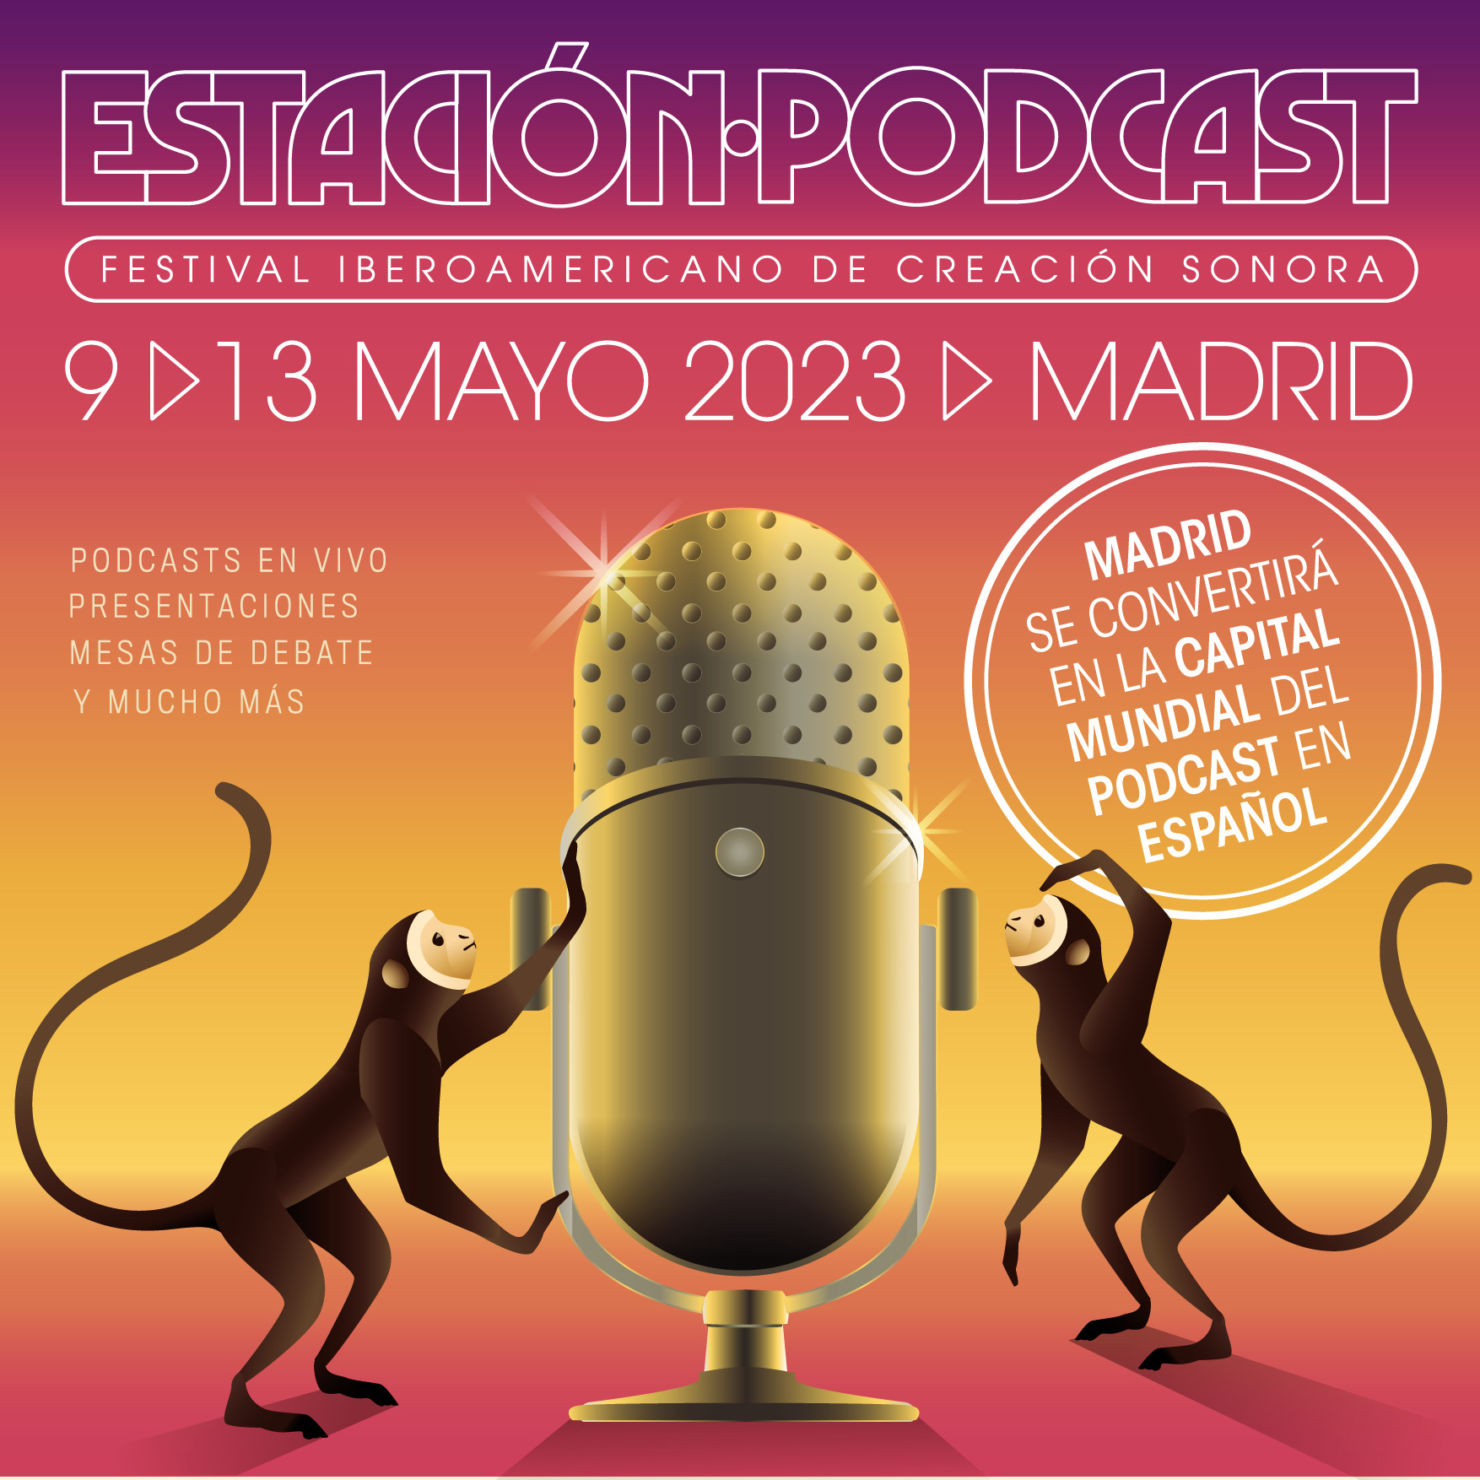 México es el invitado de honor en el festival Estación Podcast en Madrid